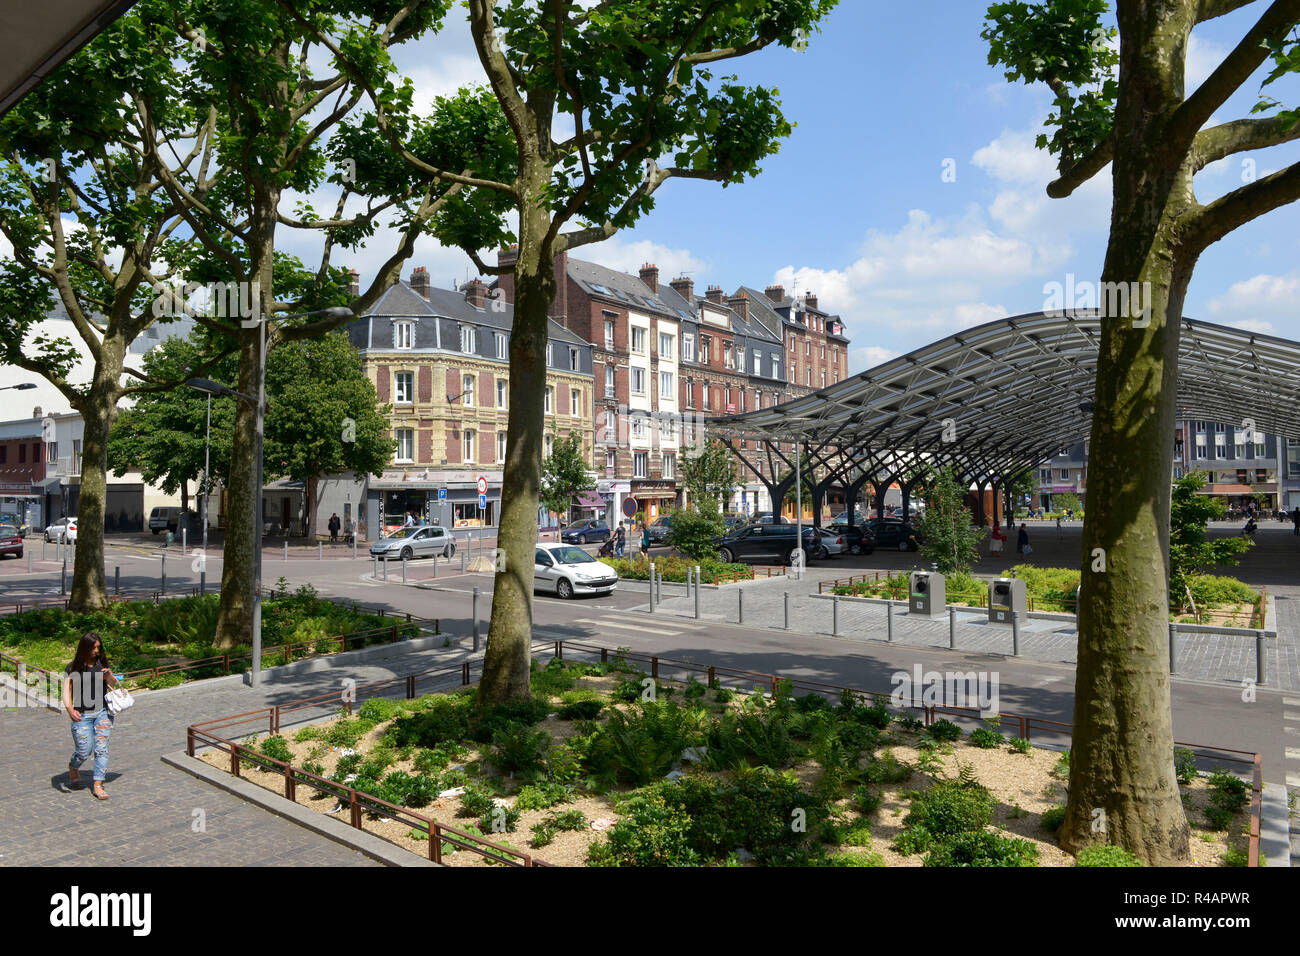 Propriétés de Rouen (centre-ouest France) : propriétés et marché couvert sur la place "place des Emmurees', dans le secteur de 'Saint Sever', Rive Gauche Banque D'Images